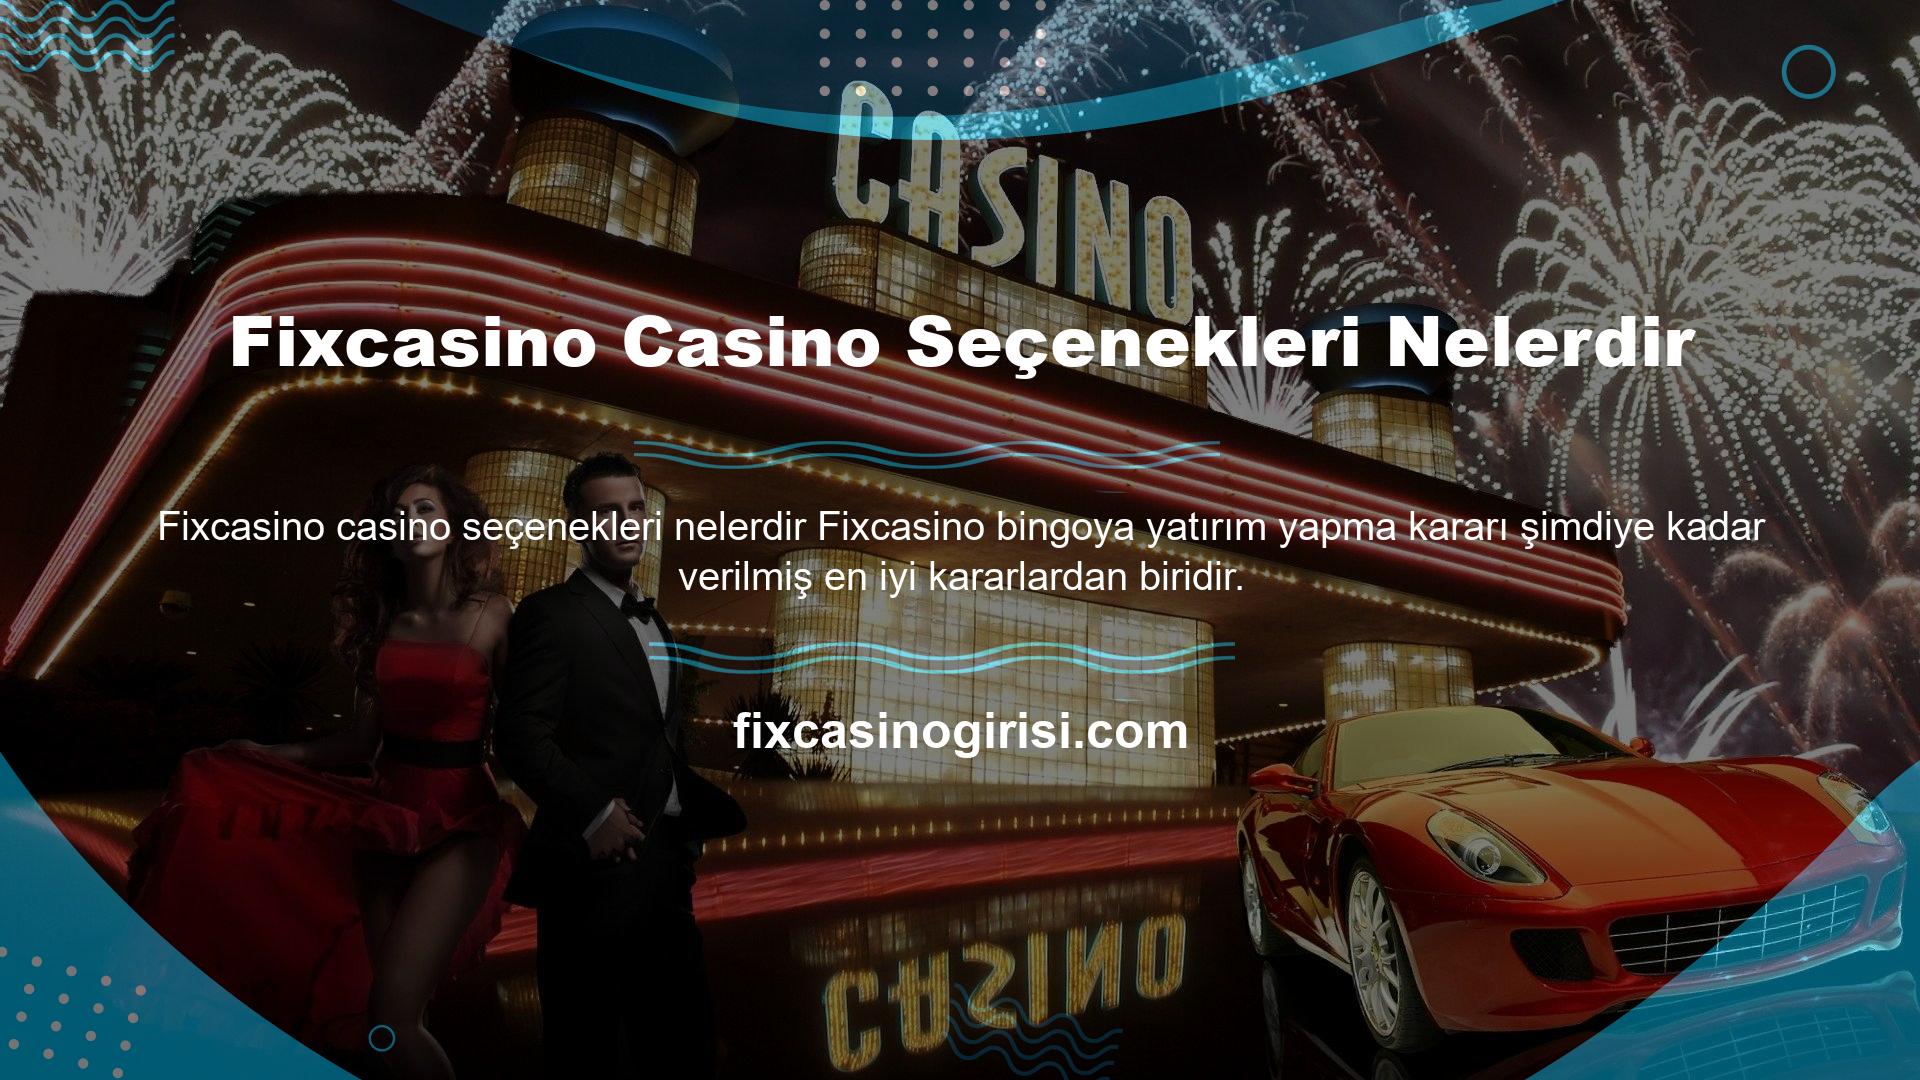 Bunun yanı sıra, bu web sitesinin canlı casino bölümünde daha birçok seçenek bulunmaktadır